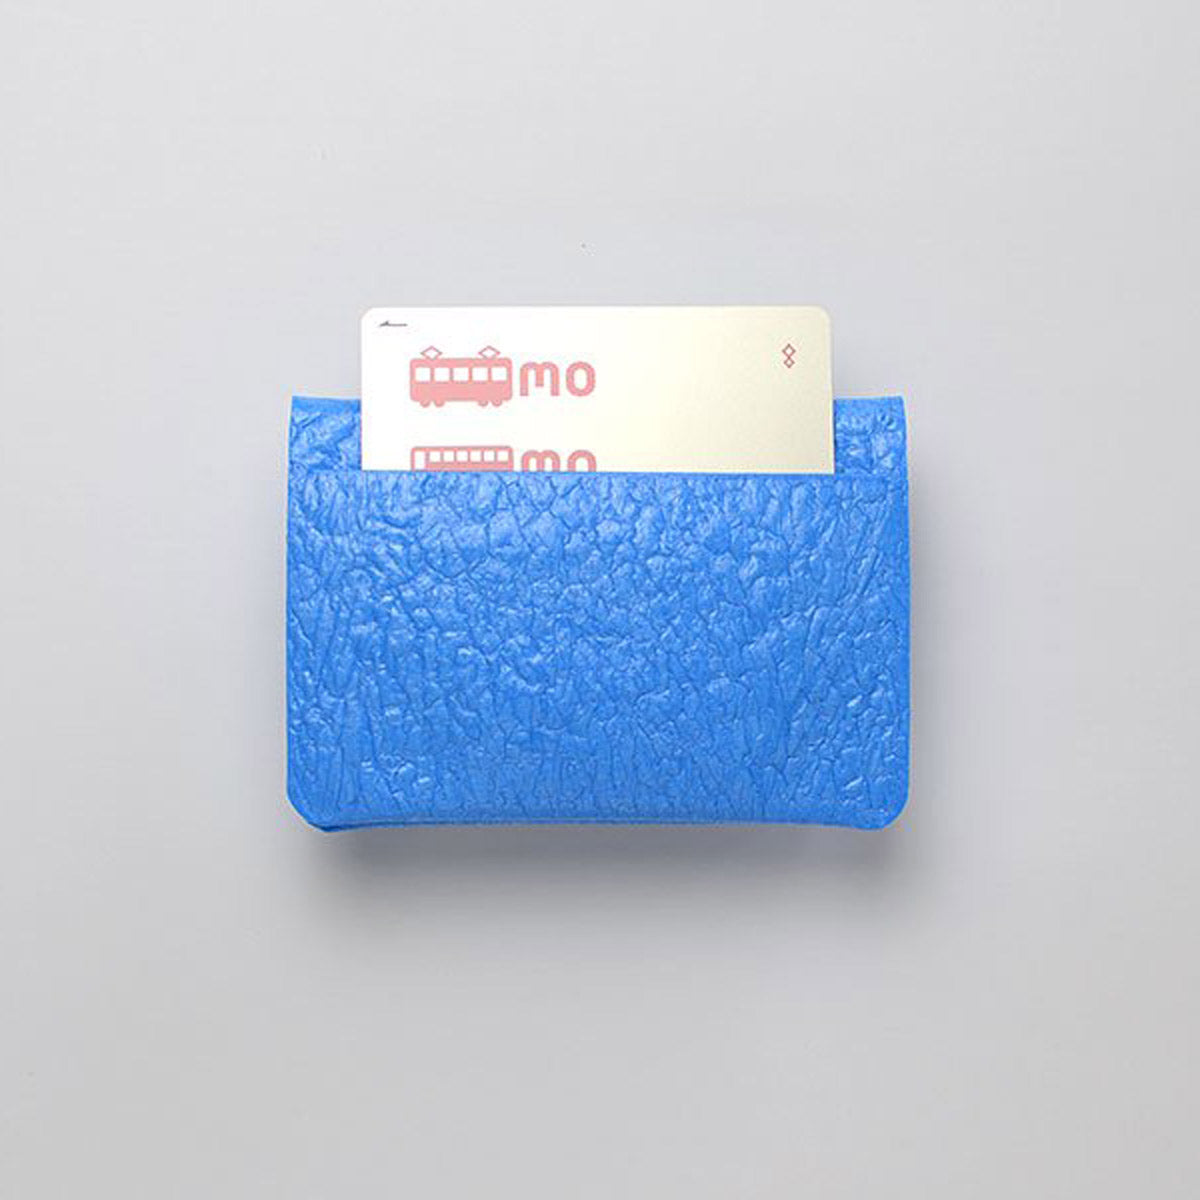 PE CARD CASE / Sky blue